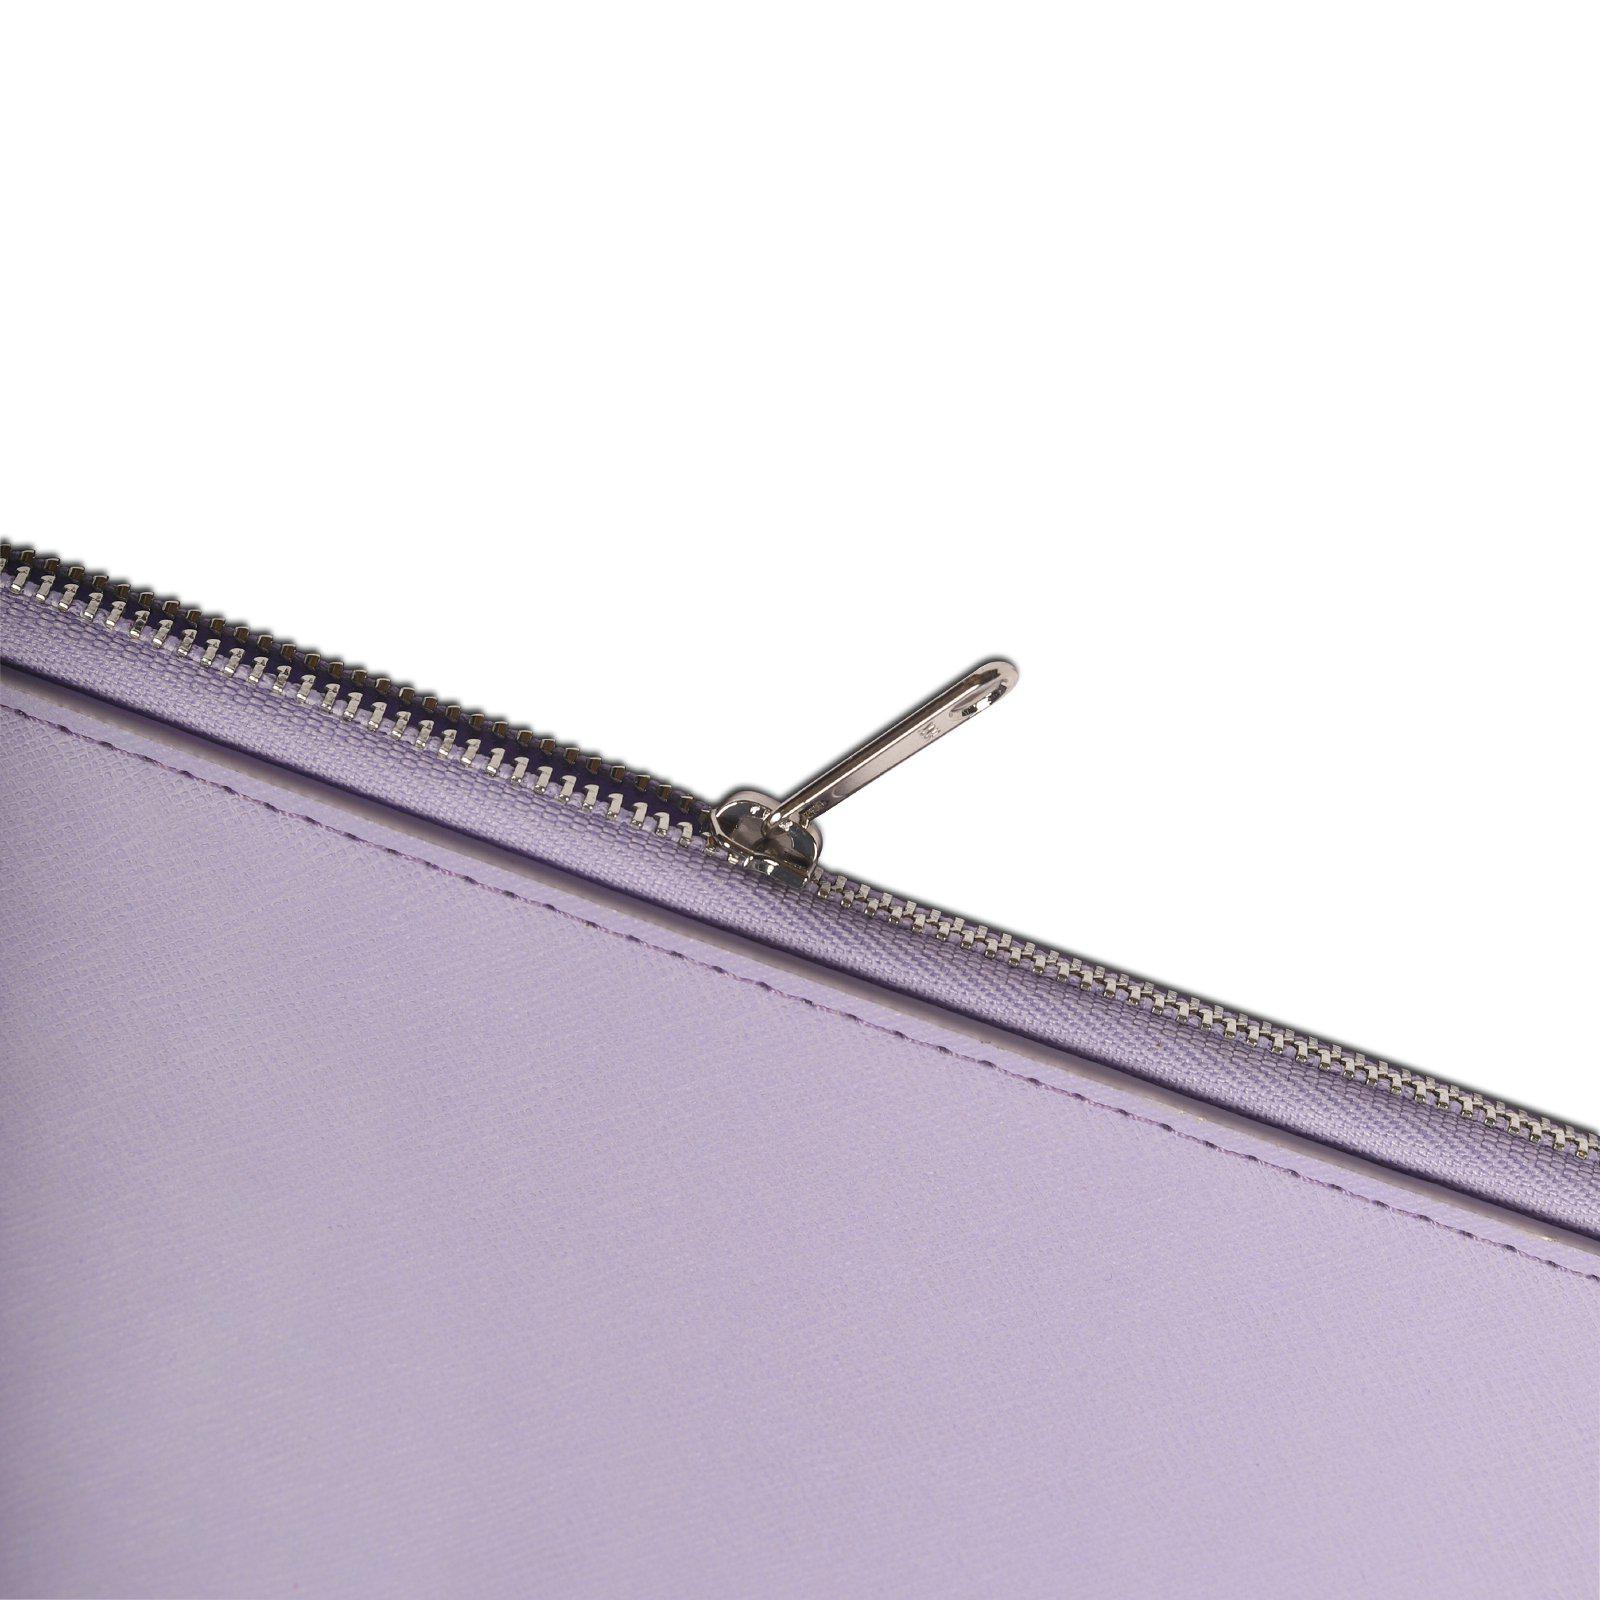 14" Laptopfodral i konstläder, Lavender